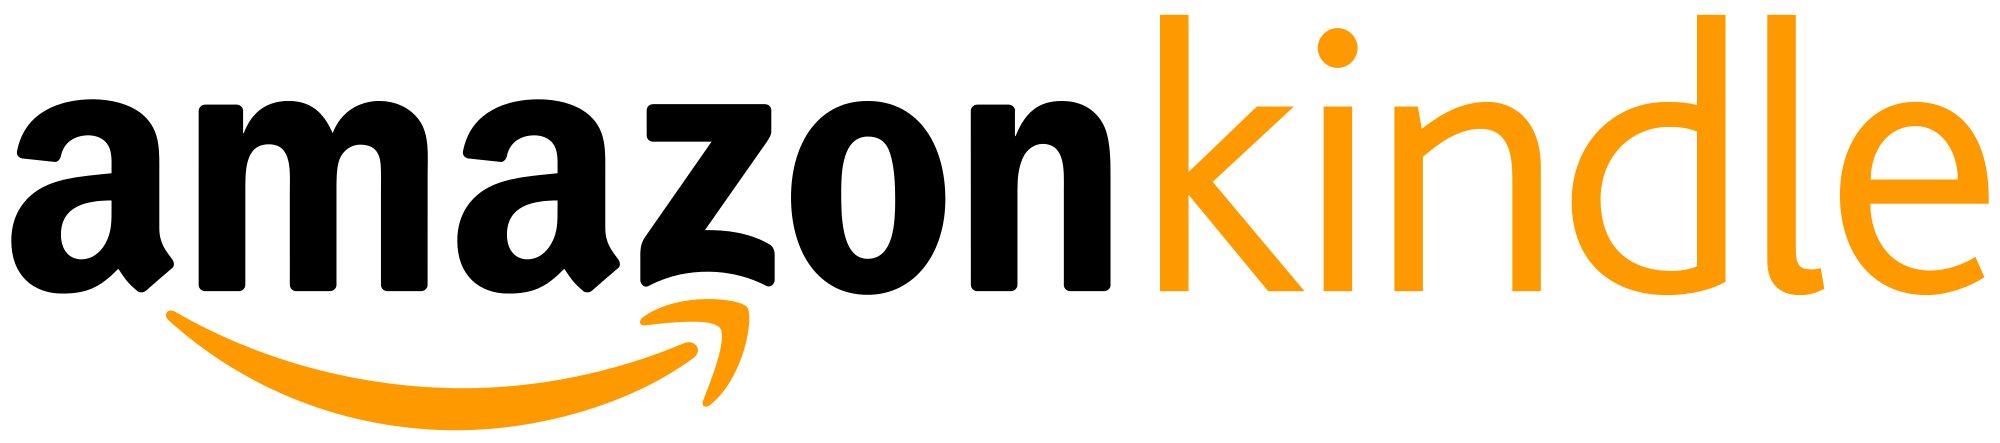 Amazon Kindle logo.png